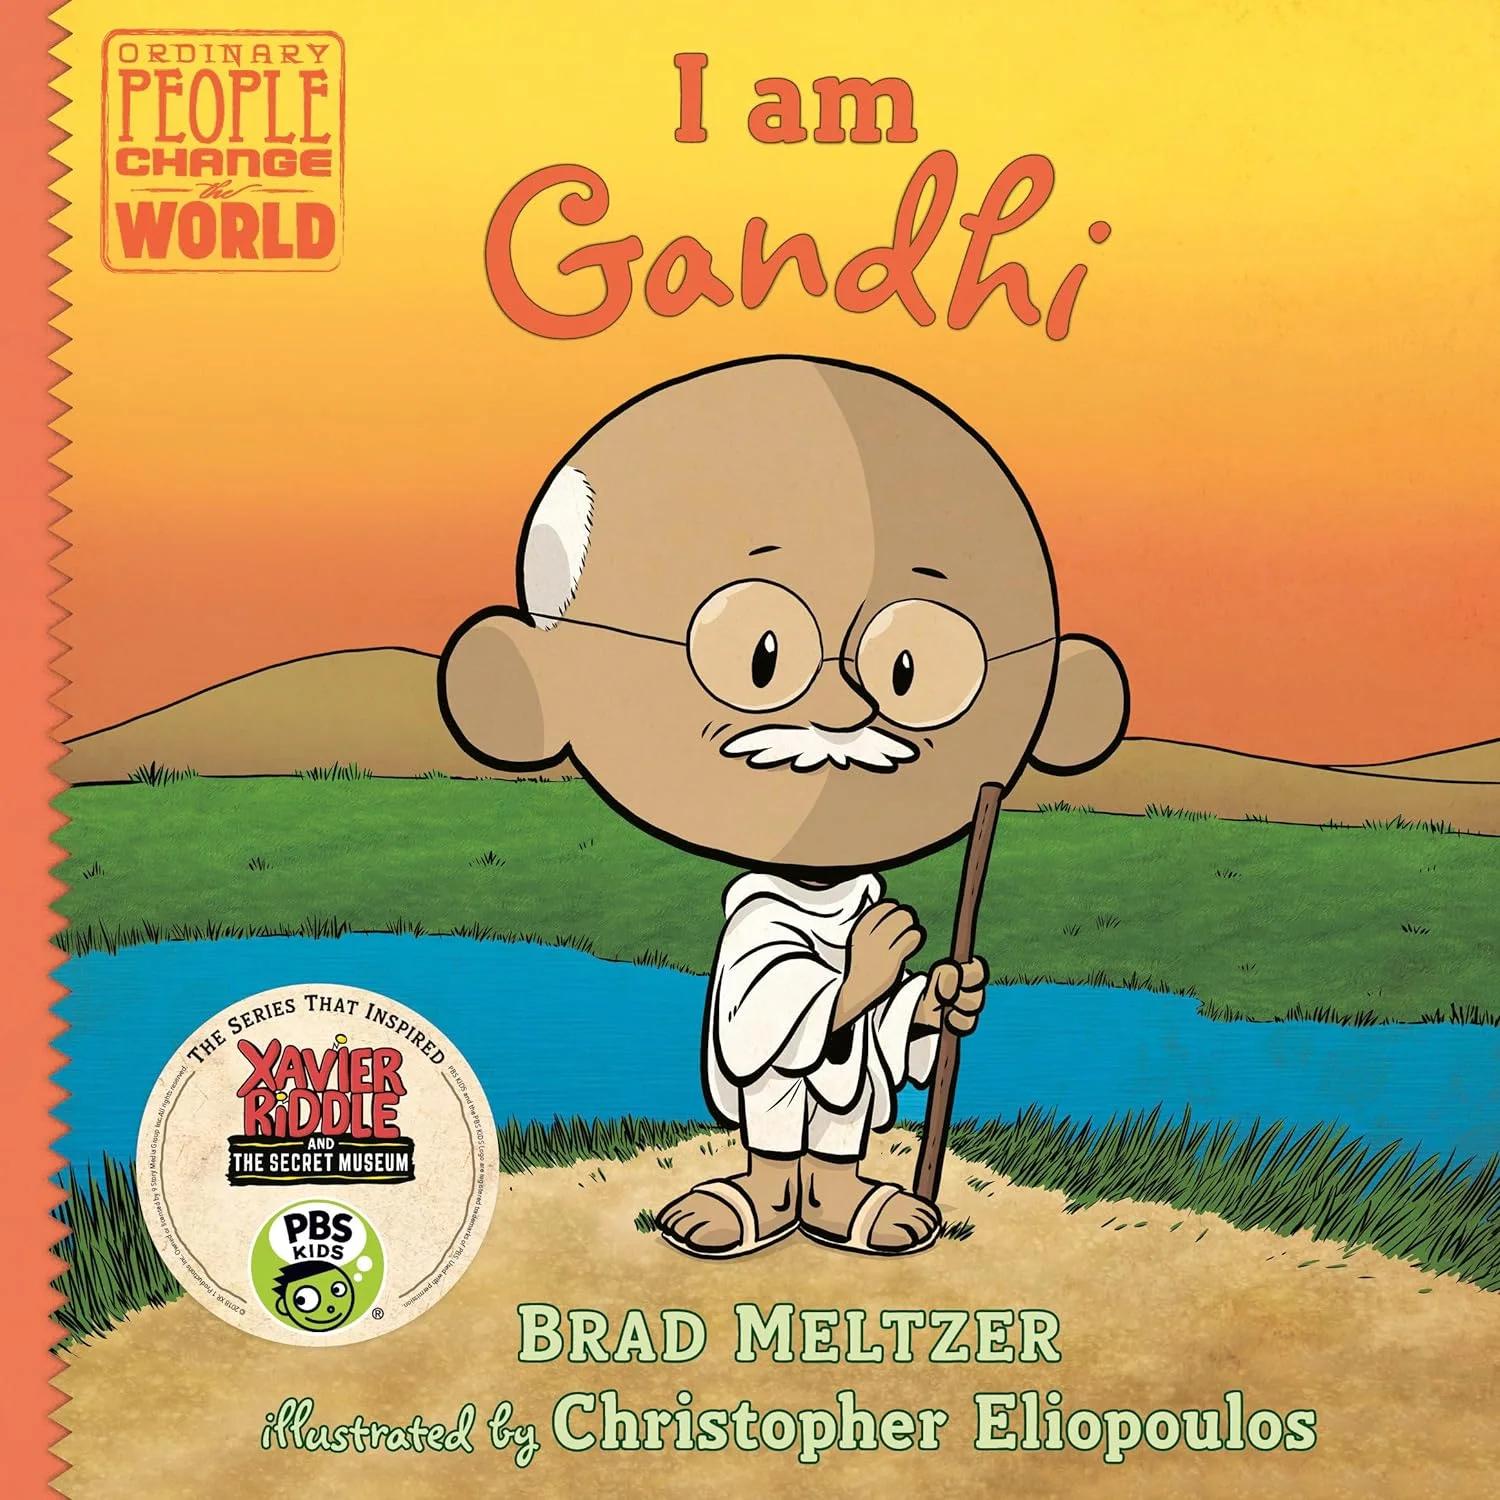 I-am-Gandhi